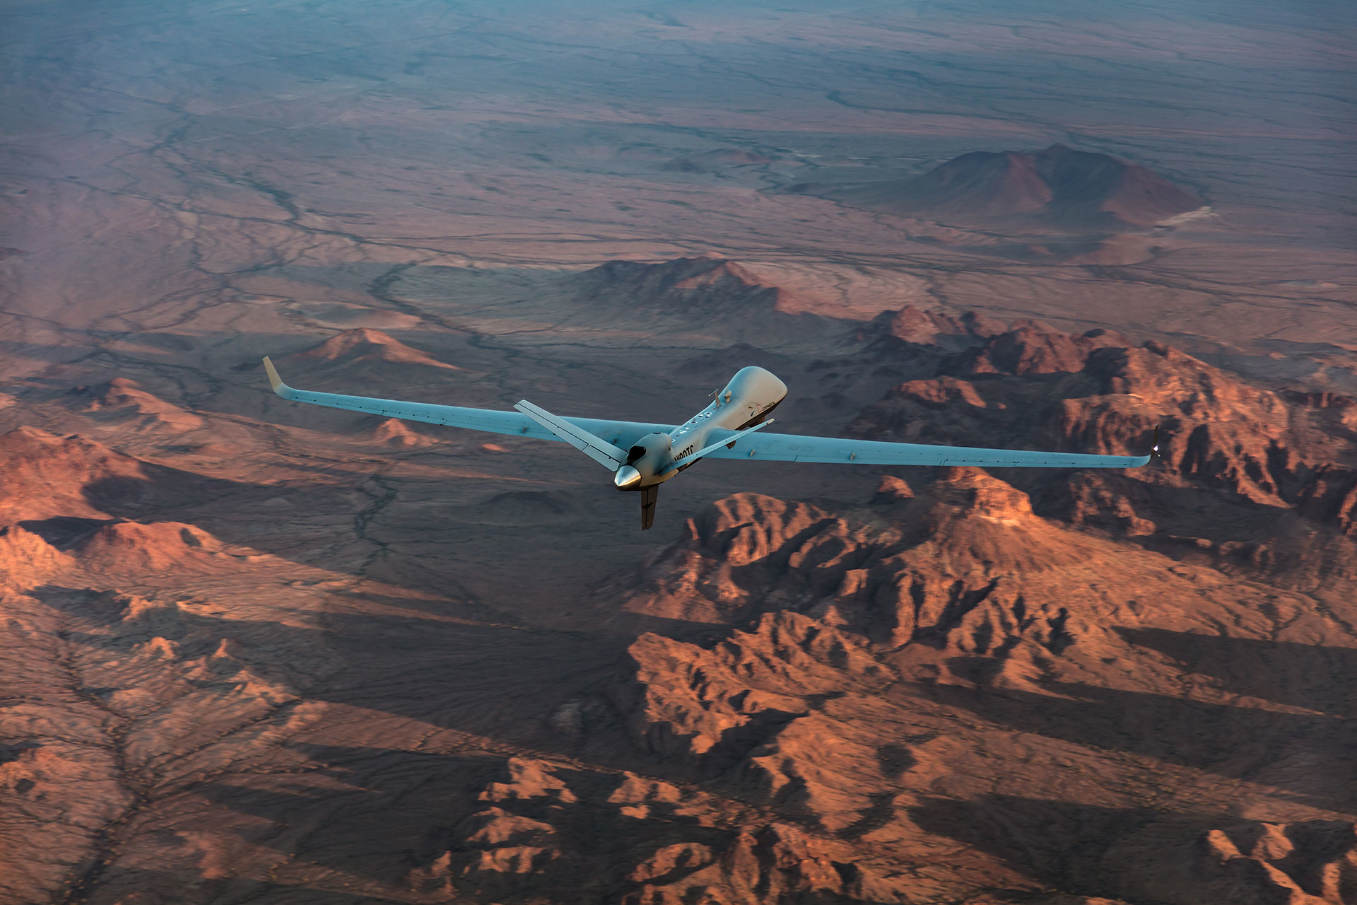 Les Etats-Unis et Israël se disputent le marché des drones militaires